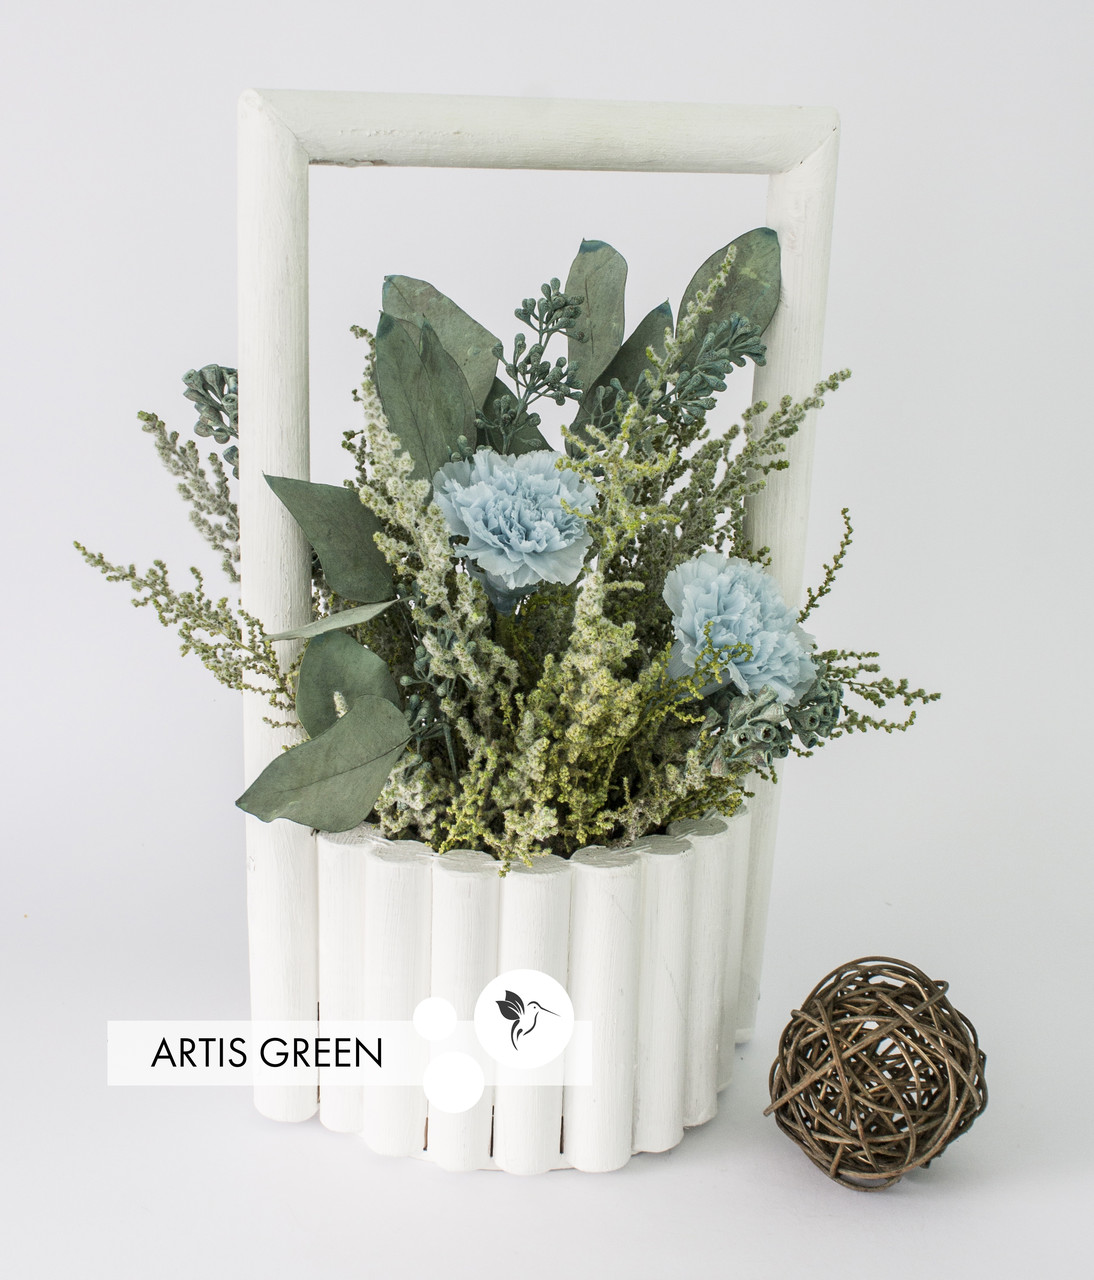 Настільна композиція "Tender Blue" з стабілізованих троянд і рослин "Artis Green", S62